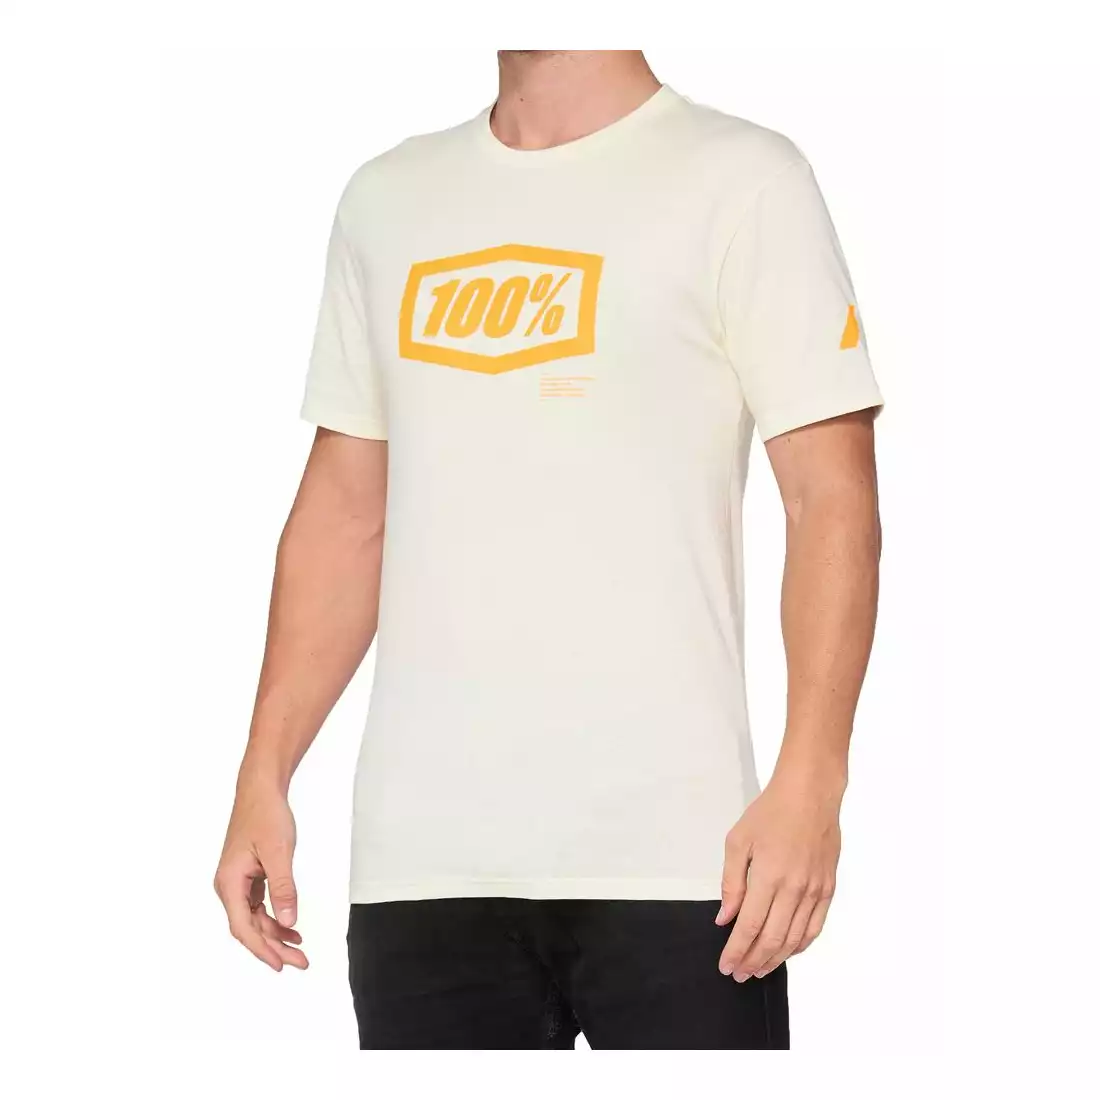 100% koszulka sportowa męska z krótkim rękawem ESSENTIAL chalk orange STO-32016-461-13